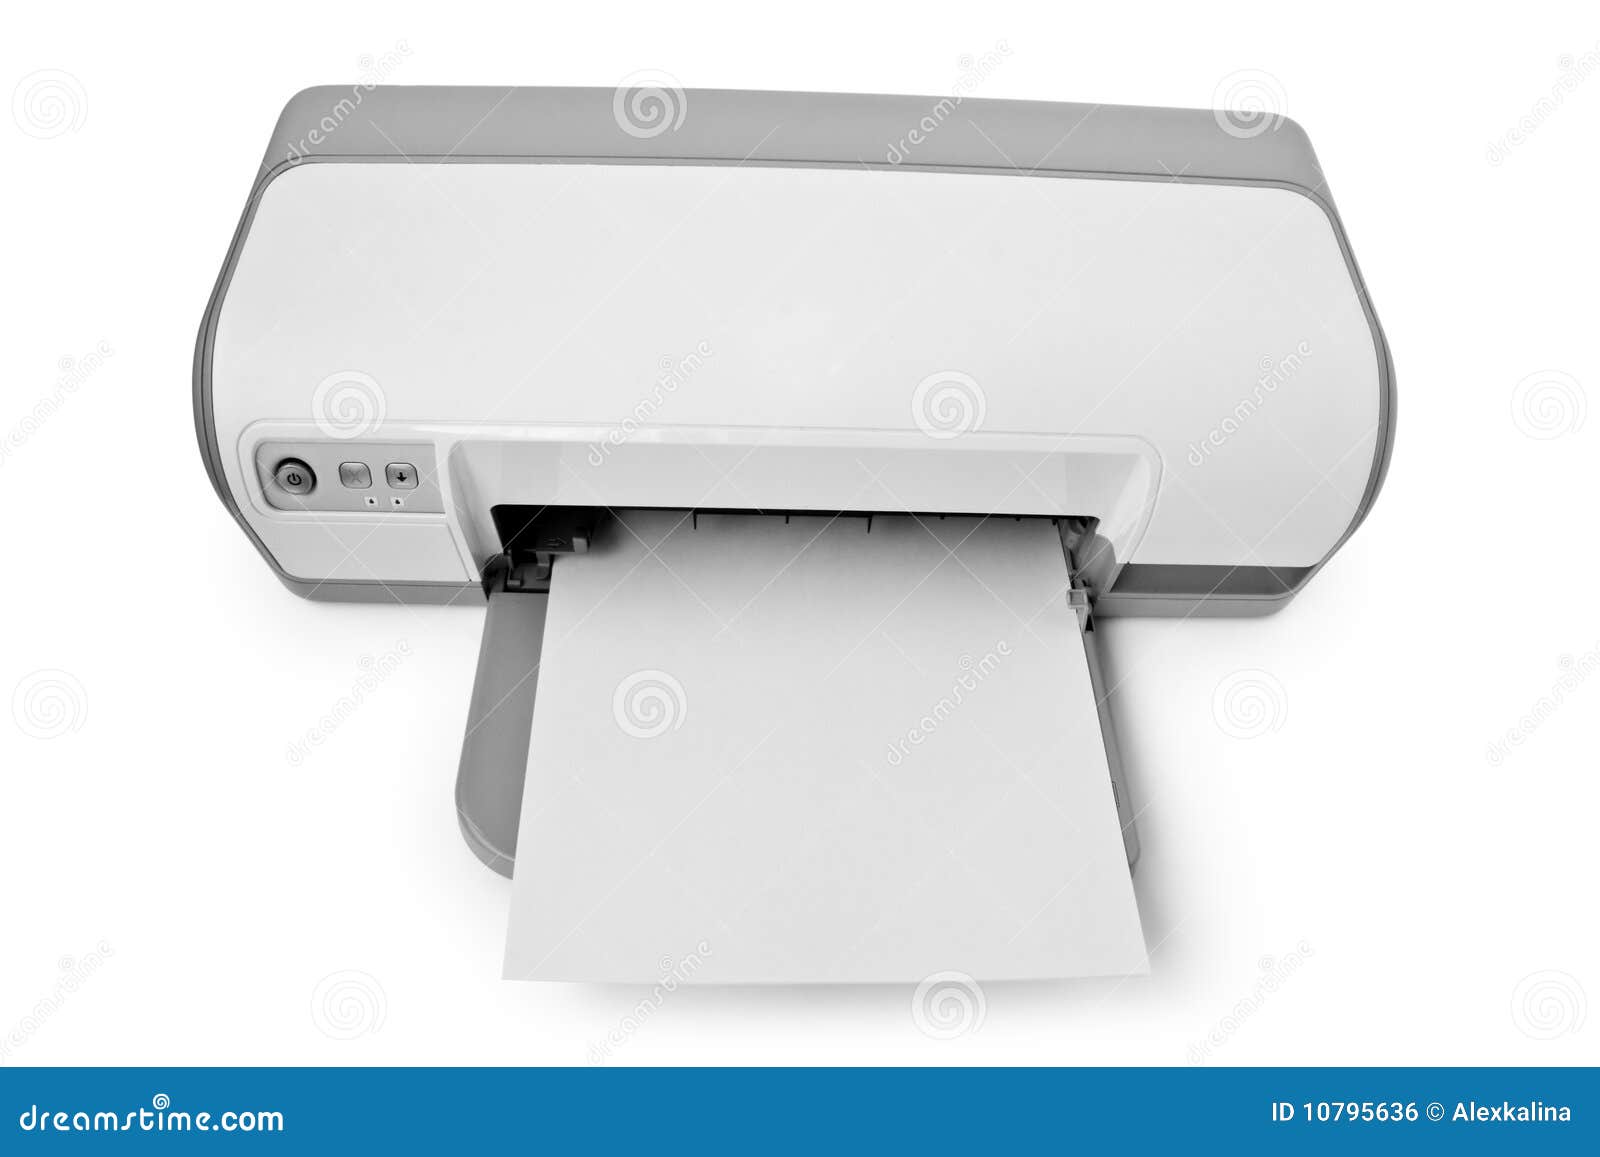 White Printer Paper on White Sand · Free Stock Photo